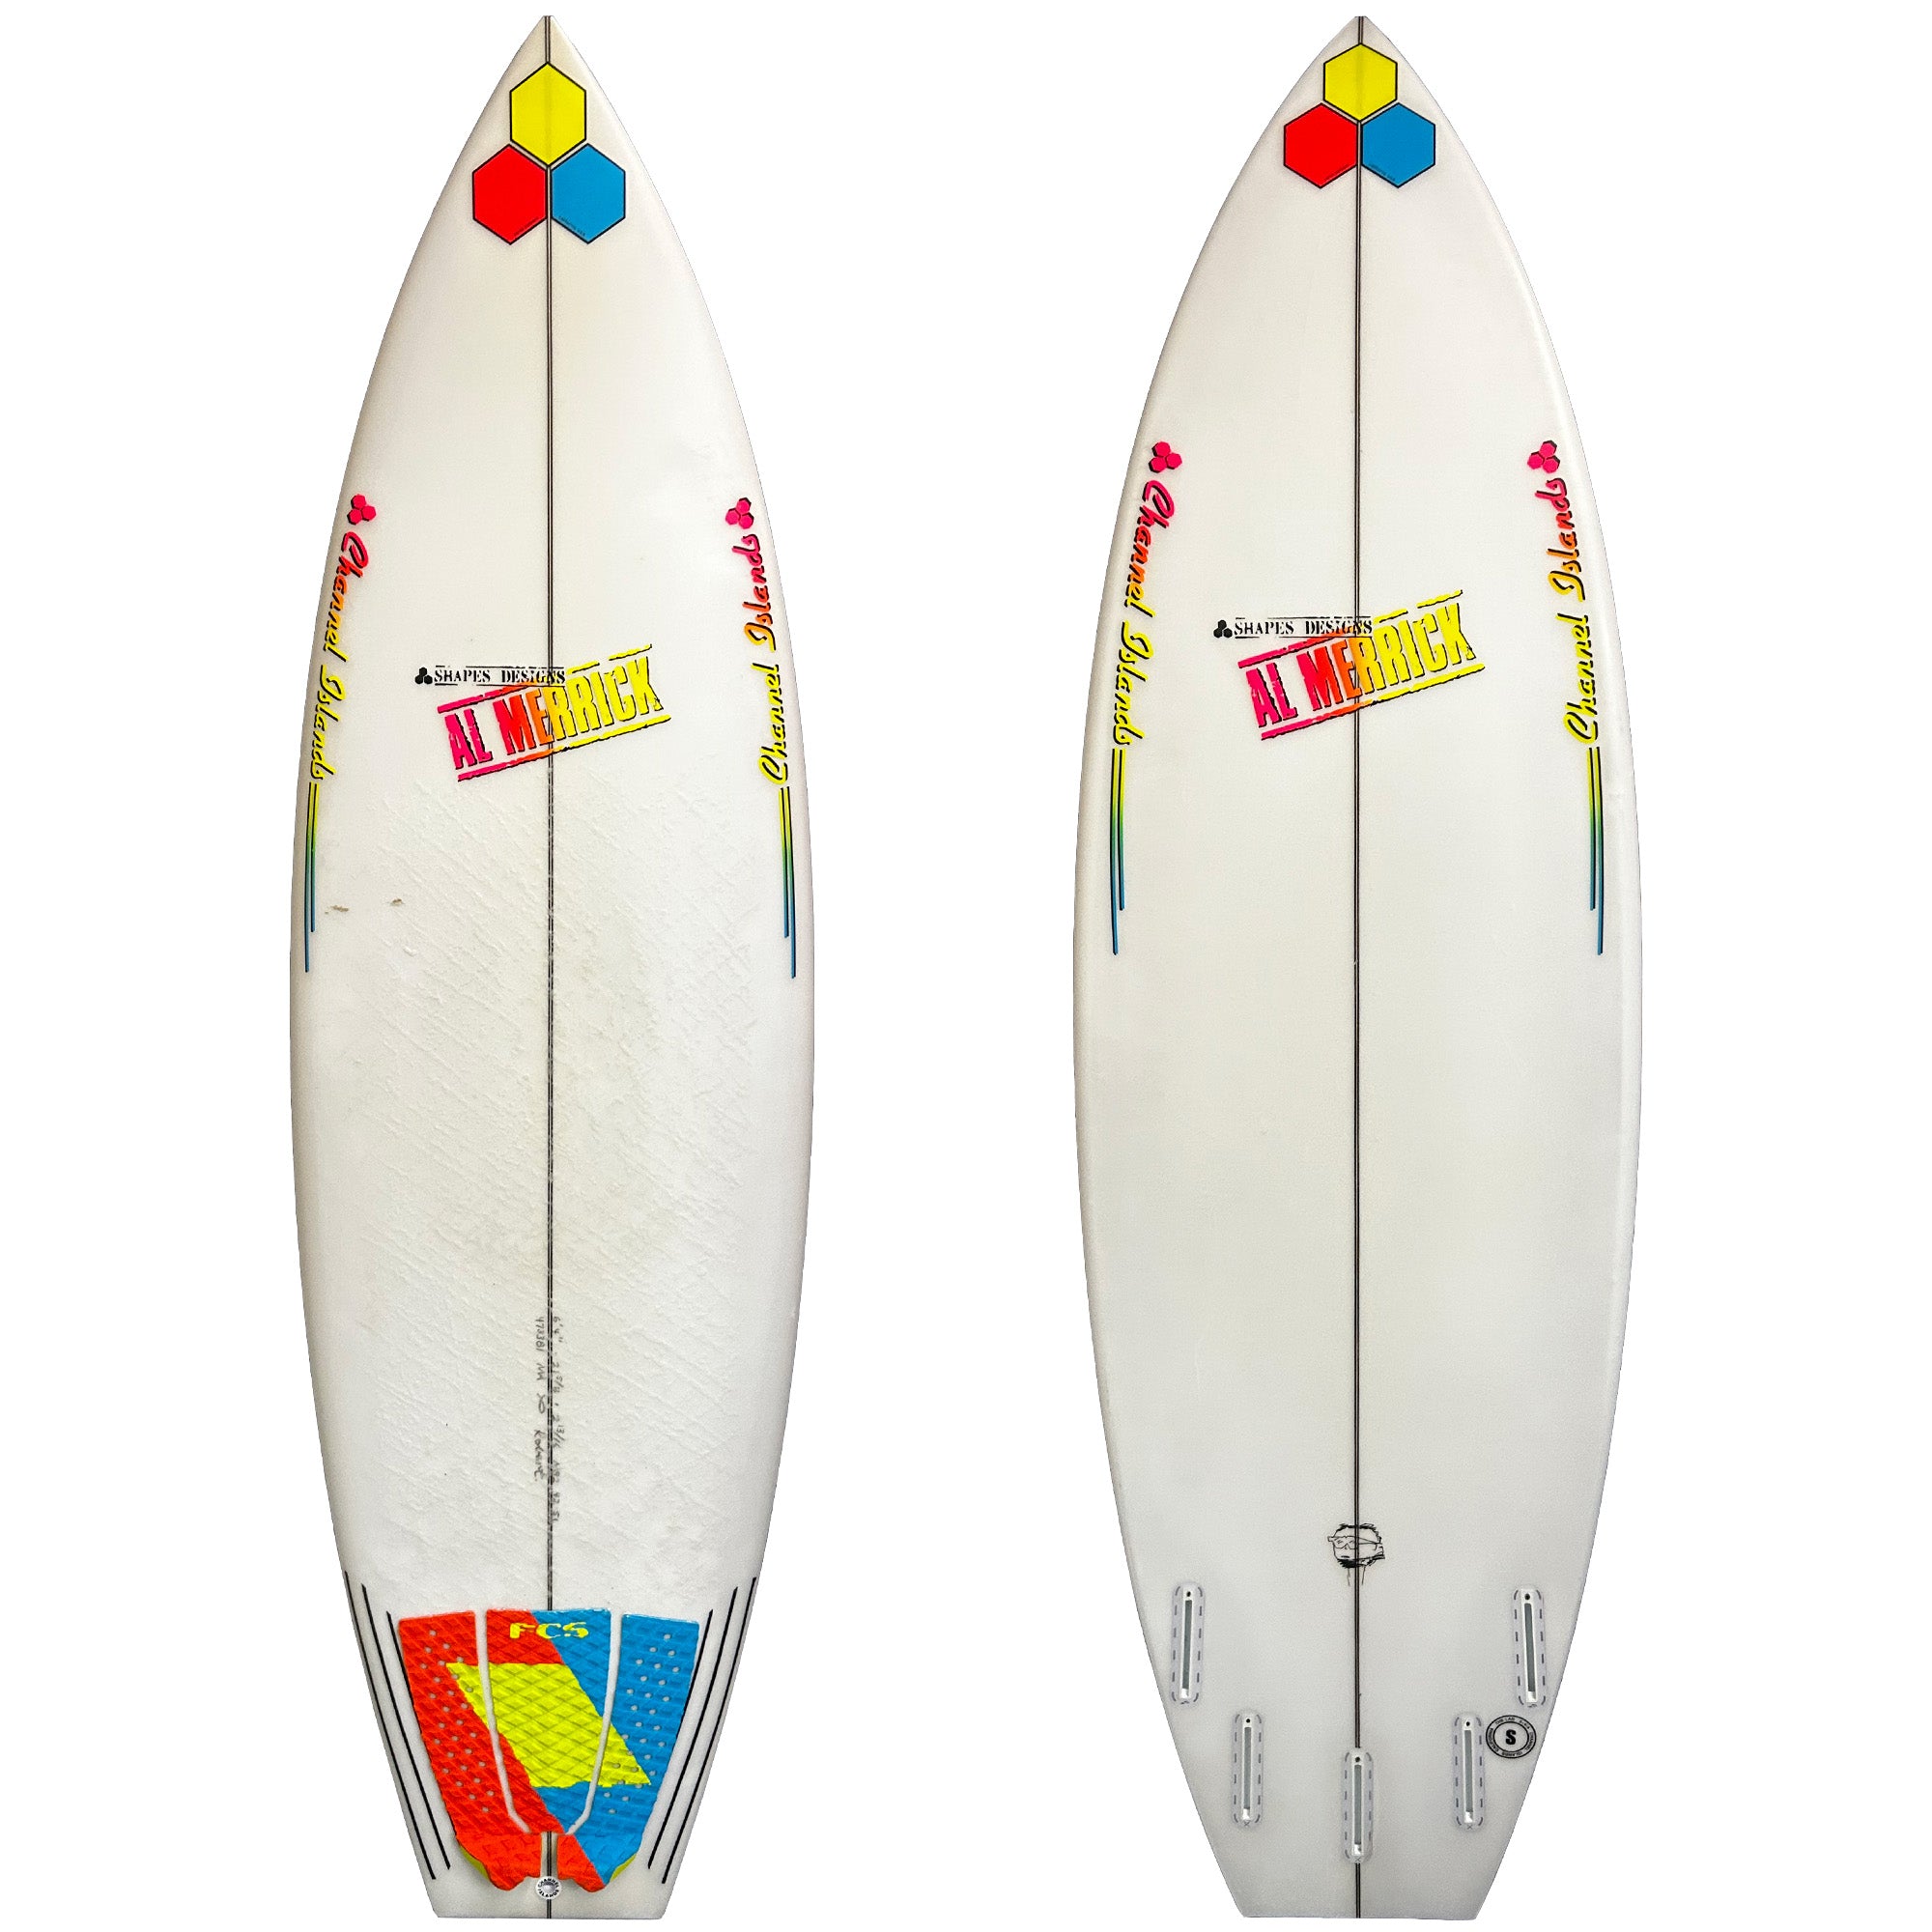 Channel Islands Neck Beard 2 6'4 Used Surfboard